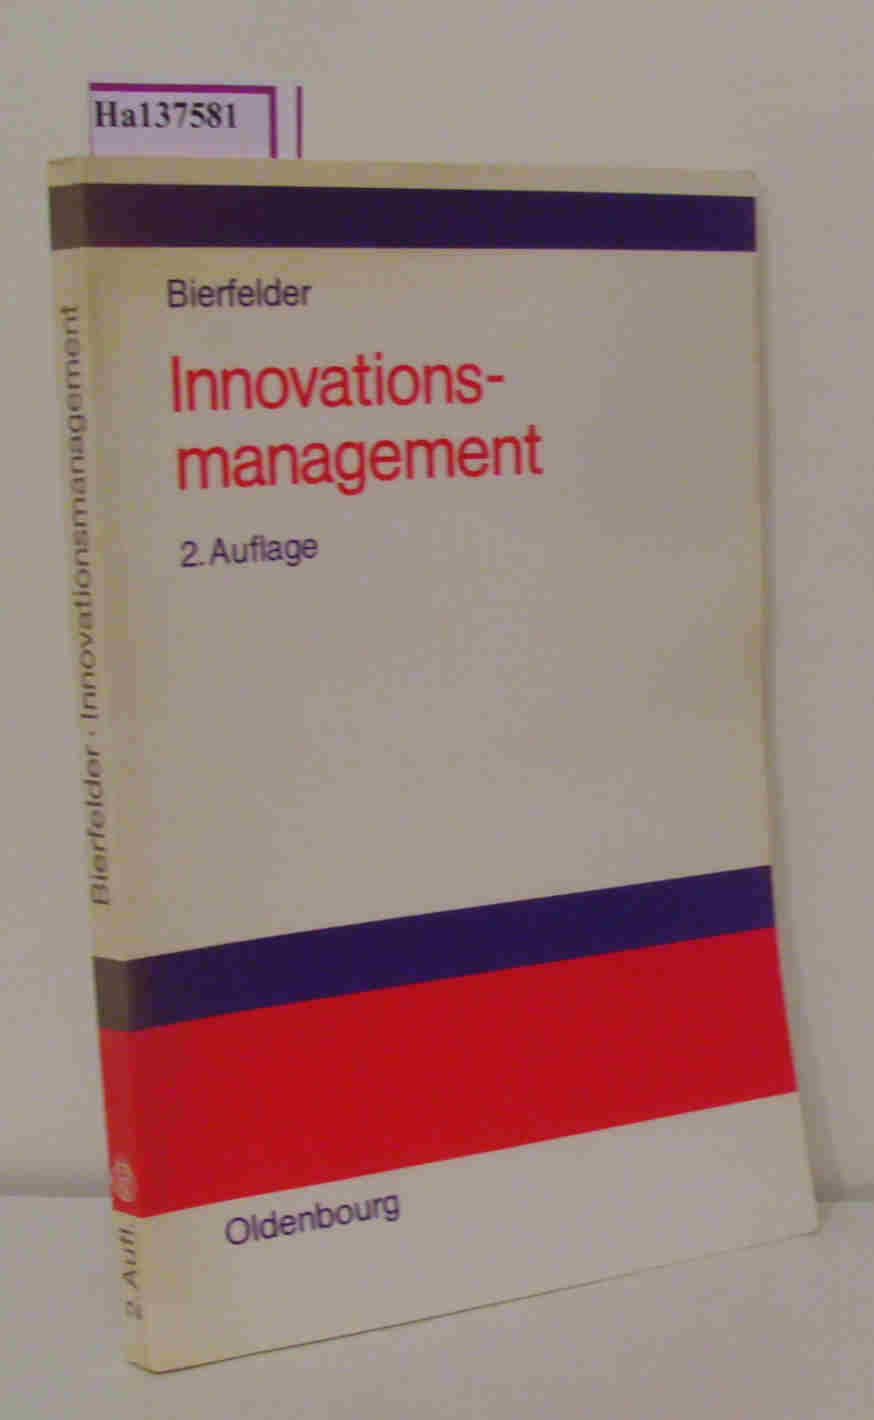 Innovationsmanagement. - Bierfelder, Wilhelm H.